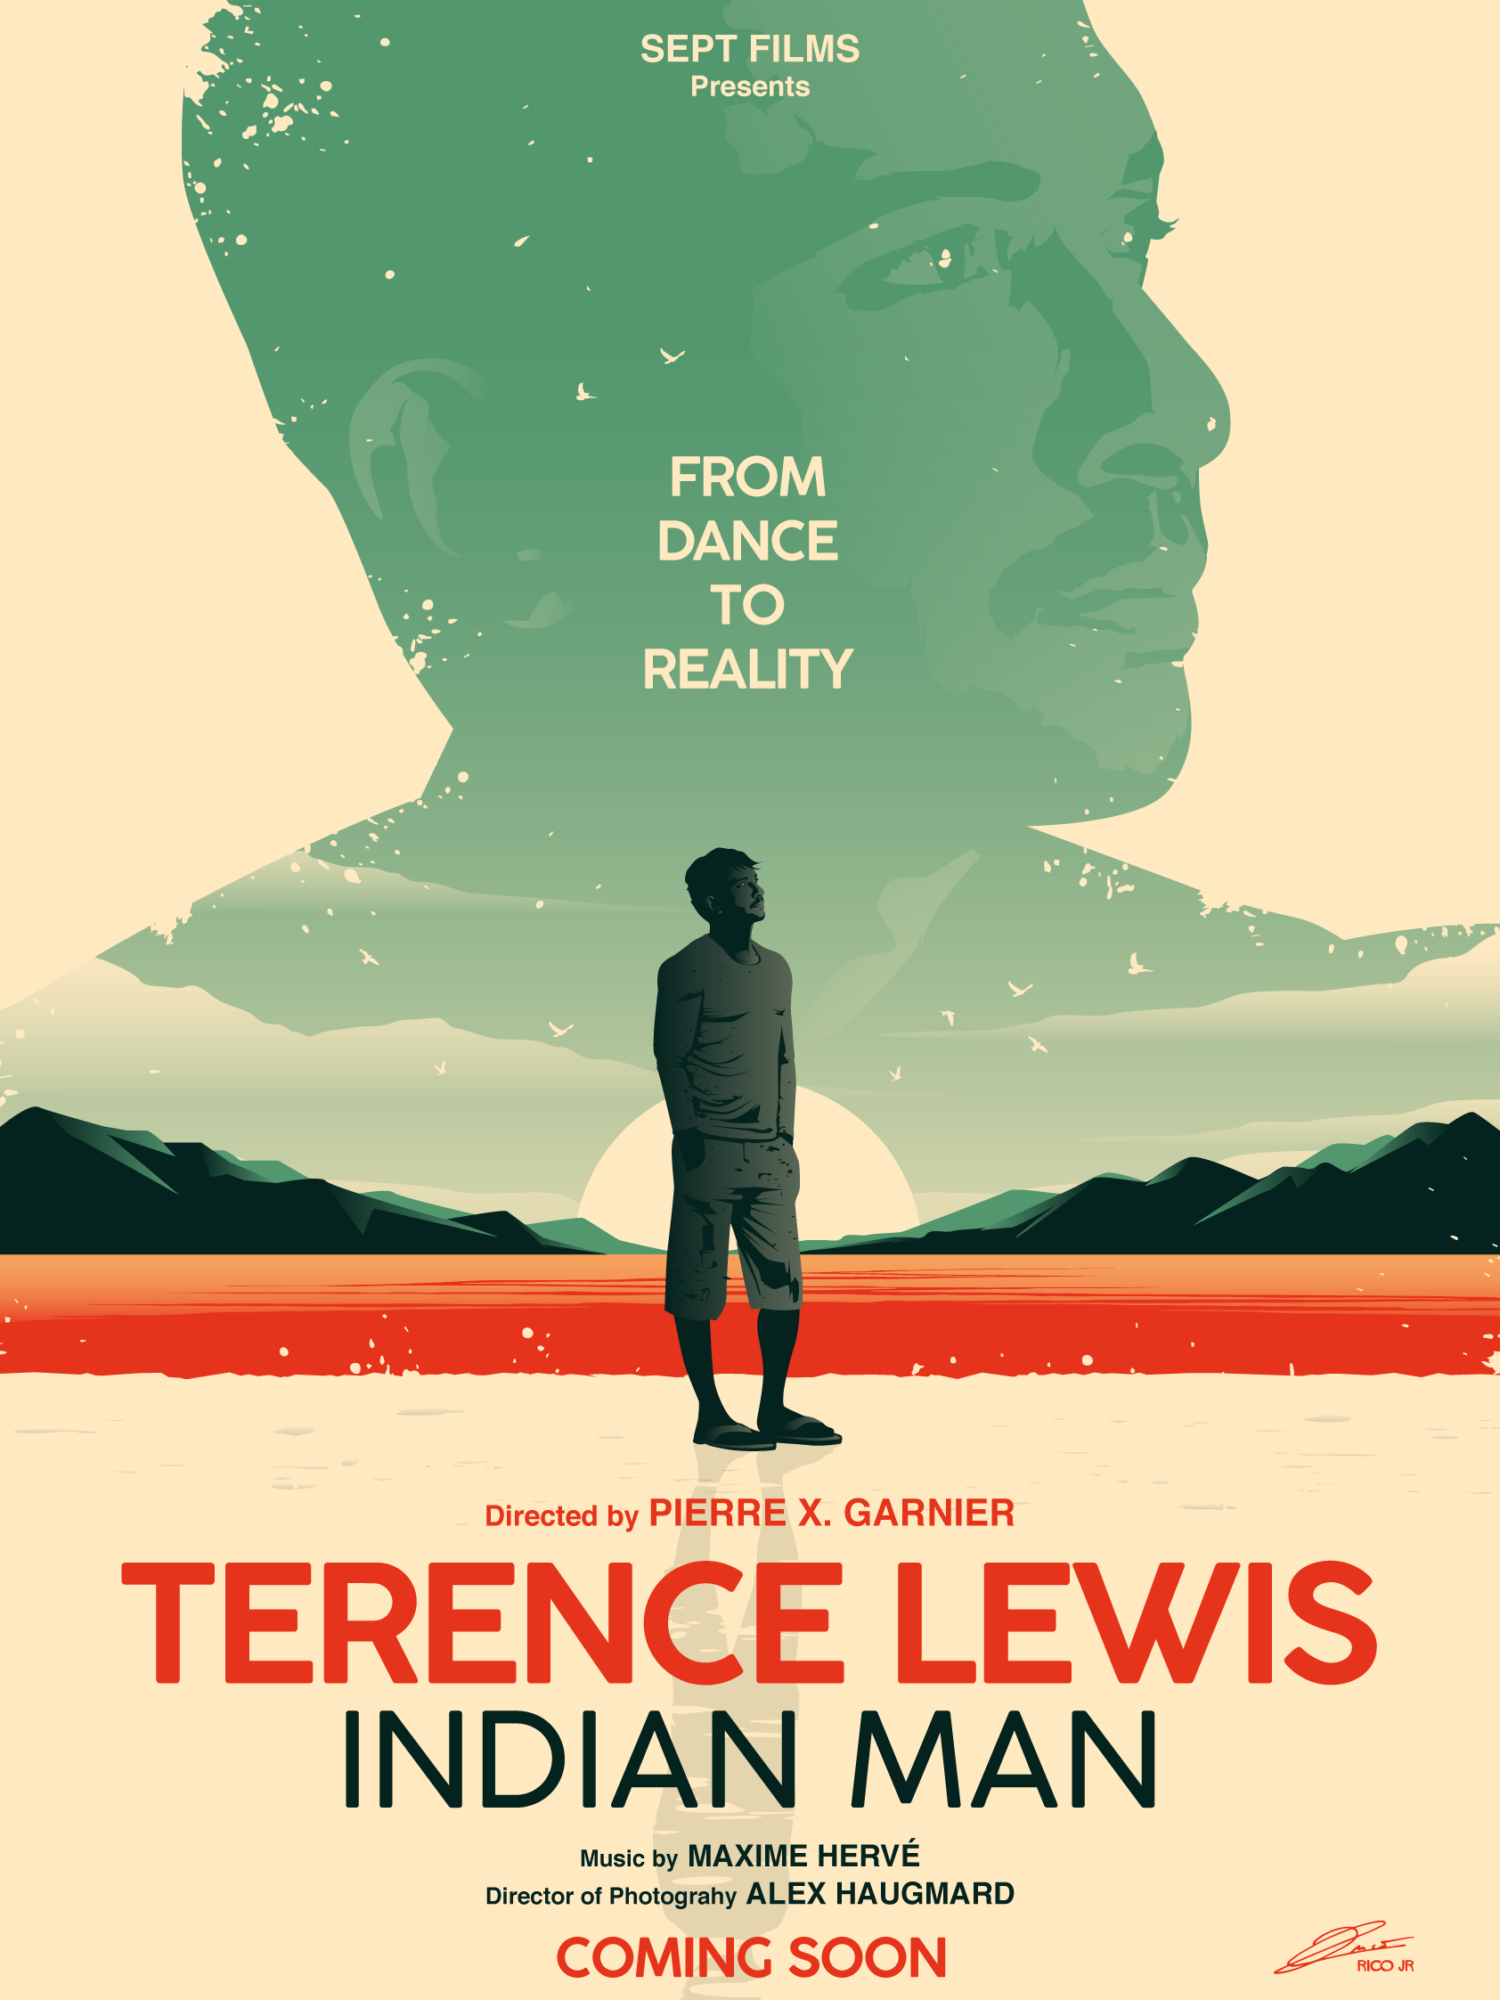 Terrence Lewis, Indian Man